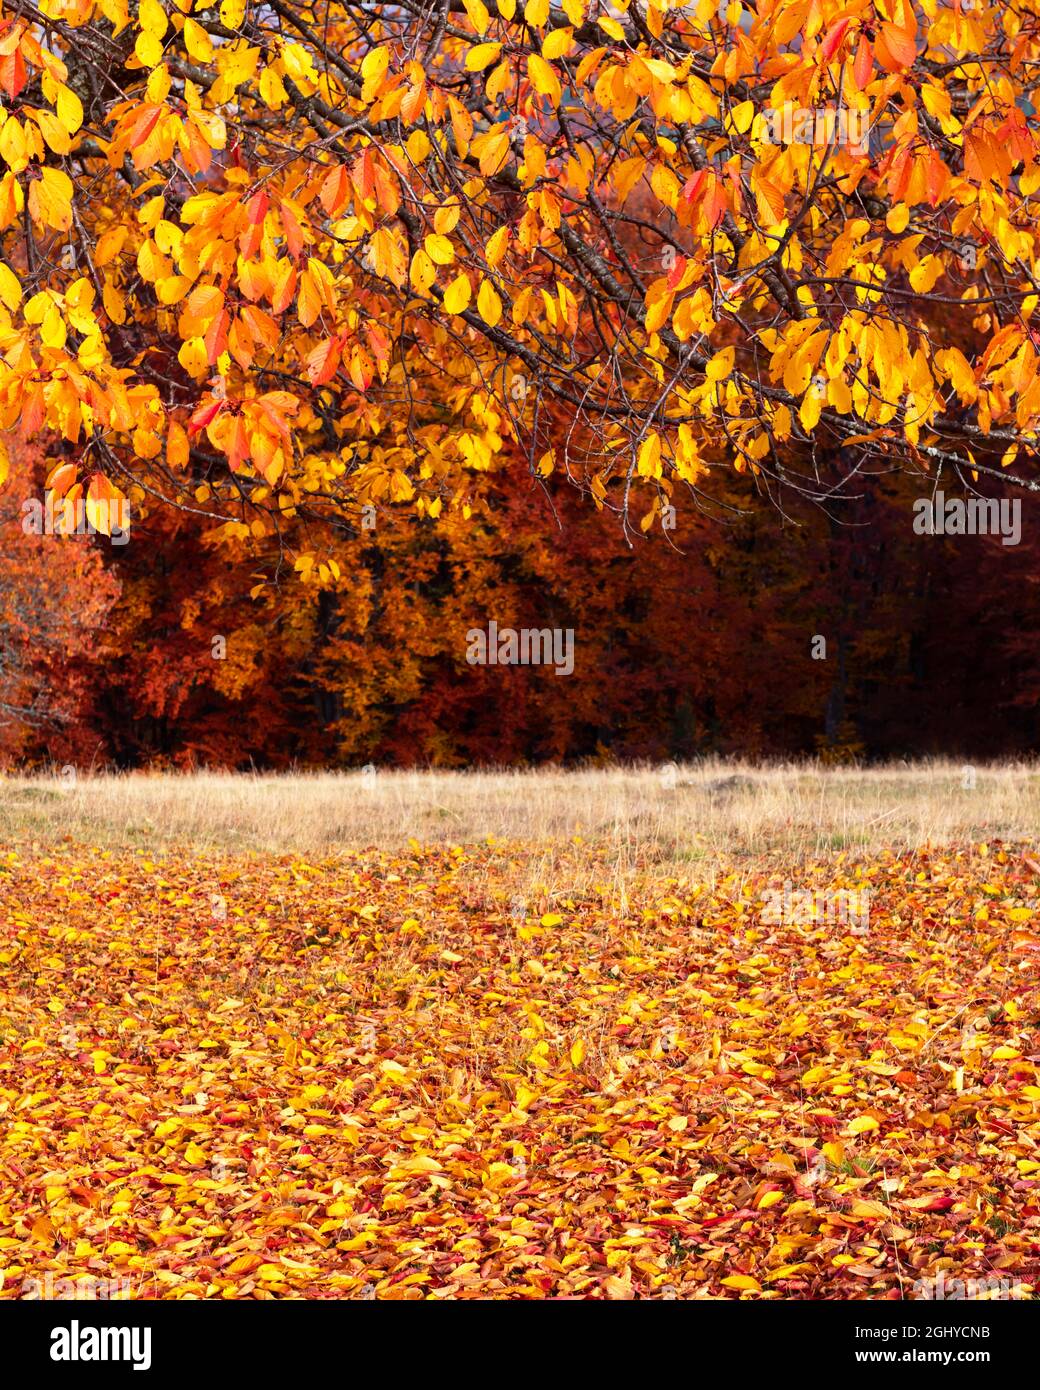 Colorati rami di faggio con folliage giallo e arancione nella foresta autunnale. Pittoresca scena autunnale nelle montagne dei Carpazi, Ucraina. Fotografia di paesaggio Foto Stock